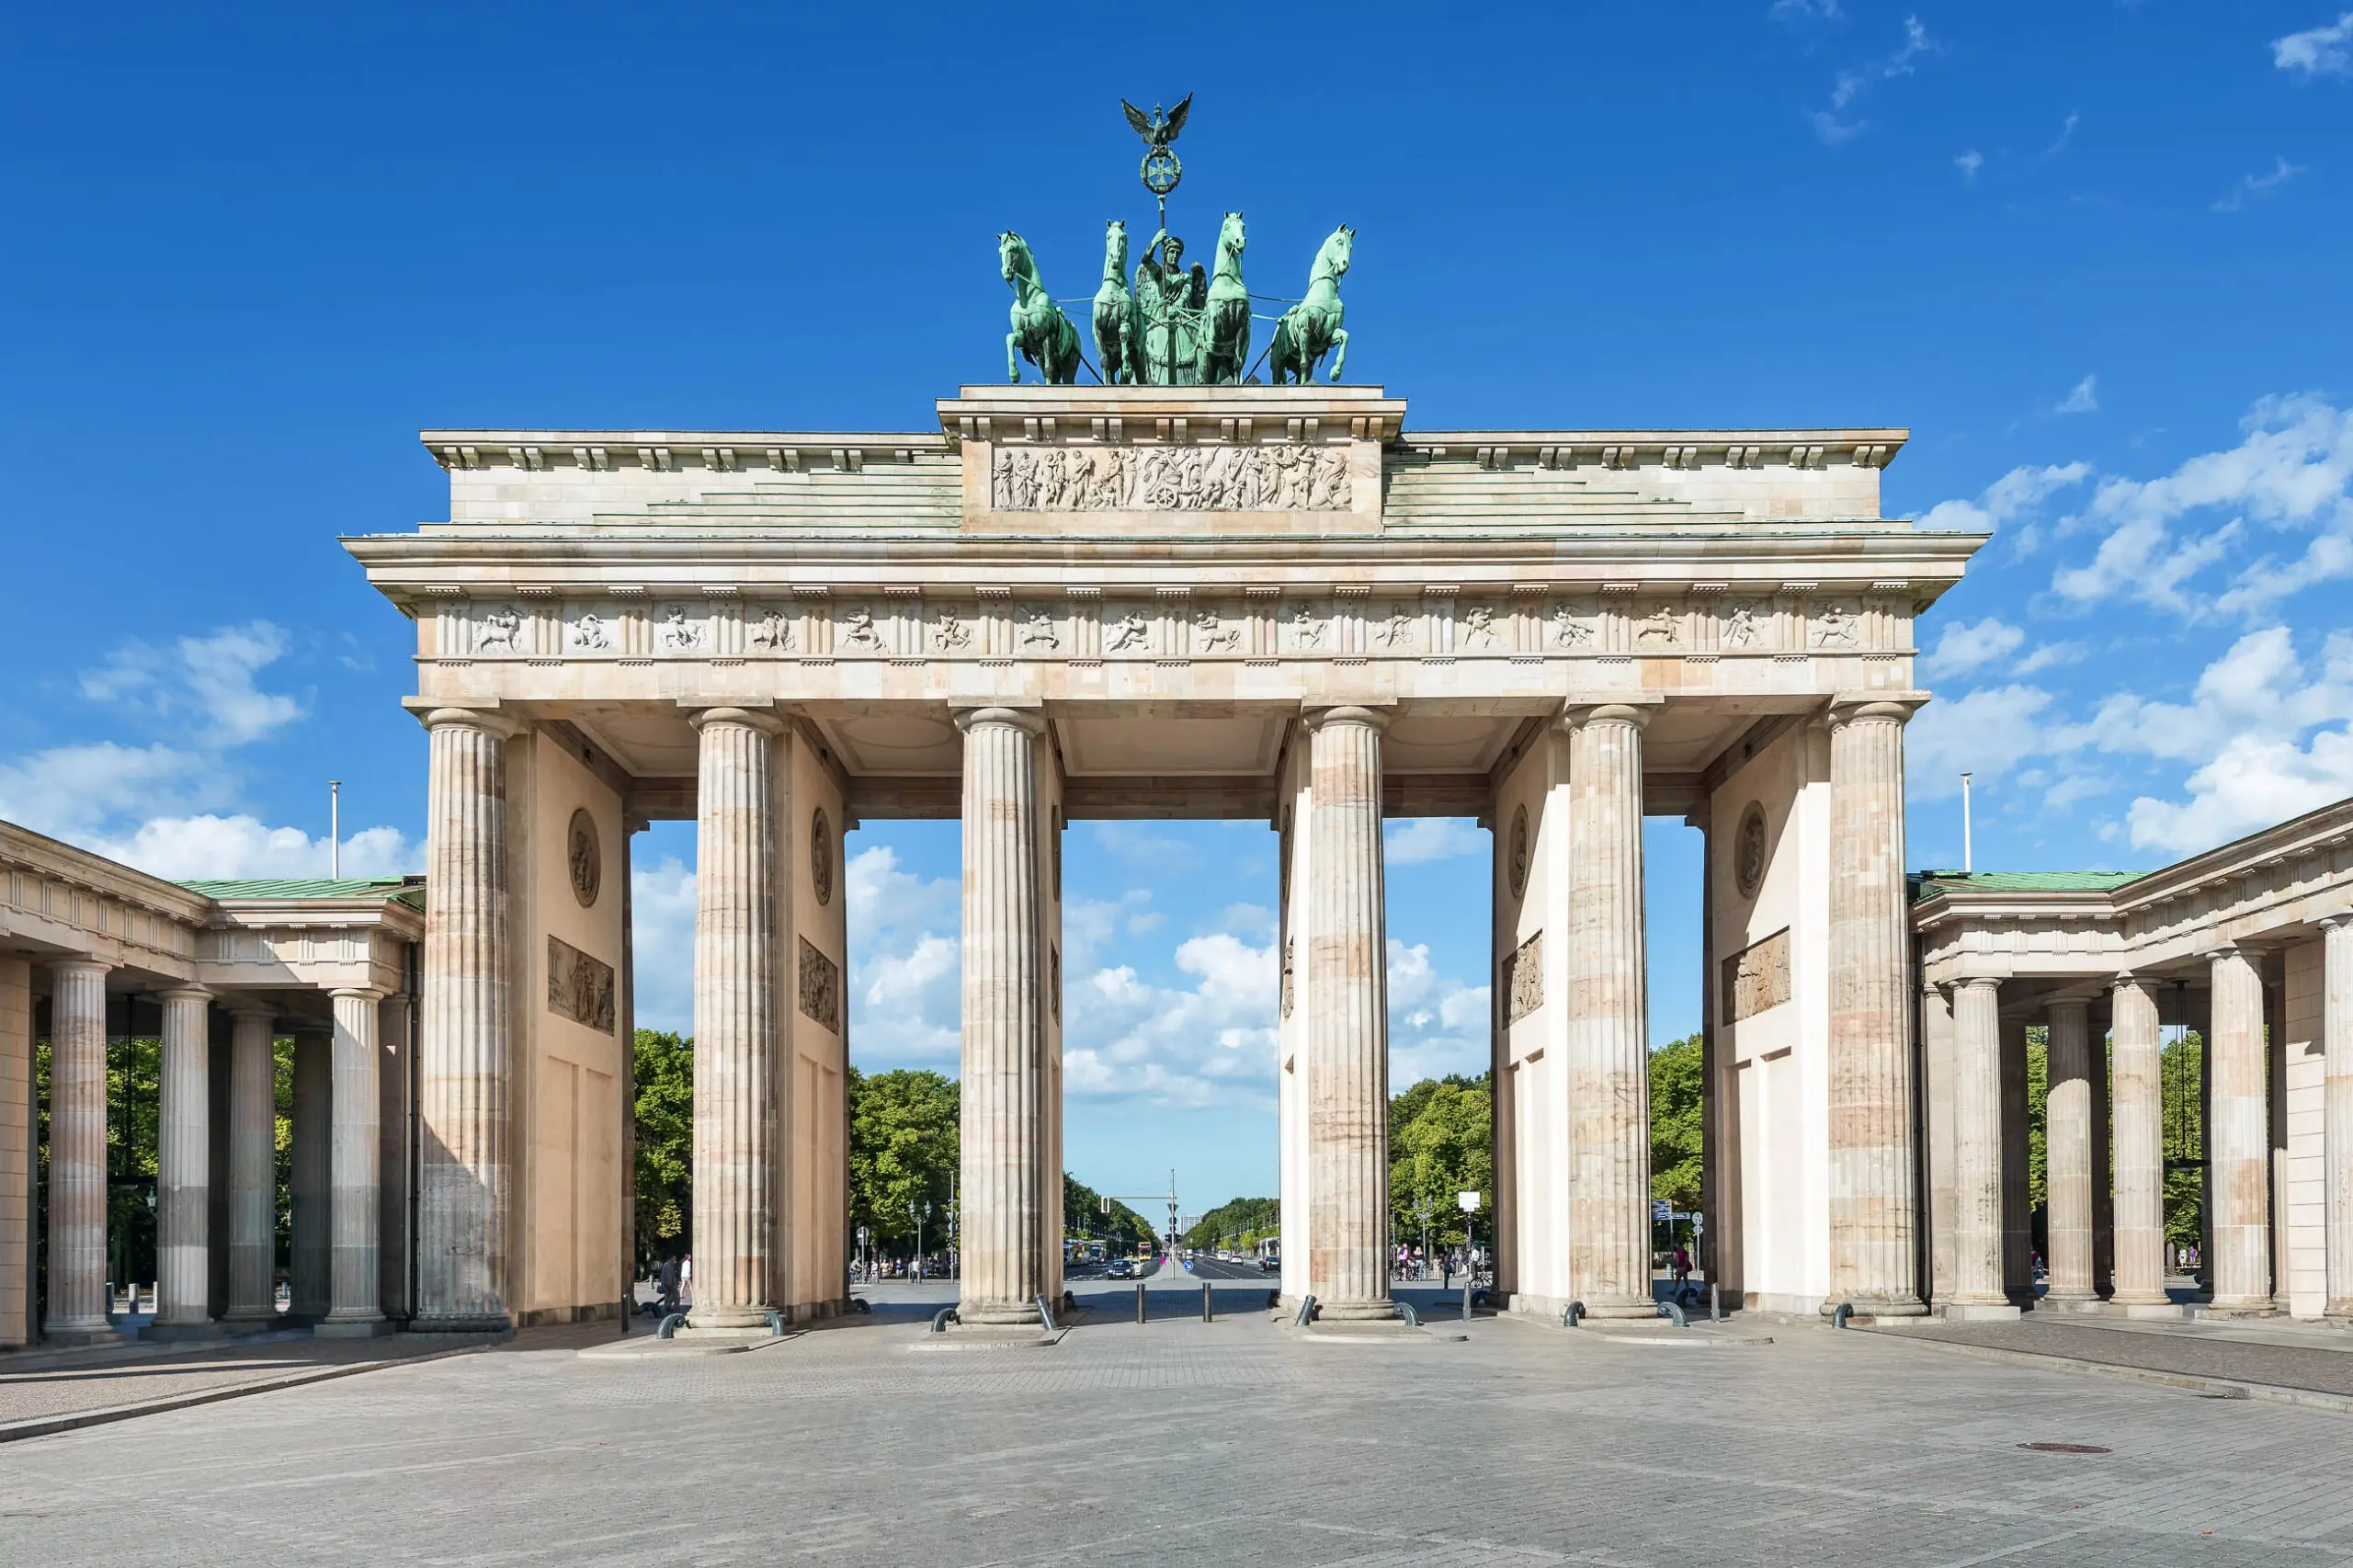 Blick auf das Brandenburger Tor mit der berühmten Quadriga - der Friedensgöttin Viktoria auf einer Kutsche mit vier vorgespannten Pferden, Berlin, Deutschland